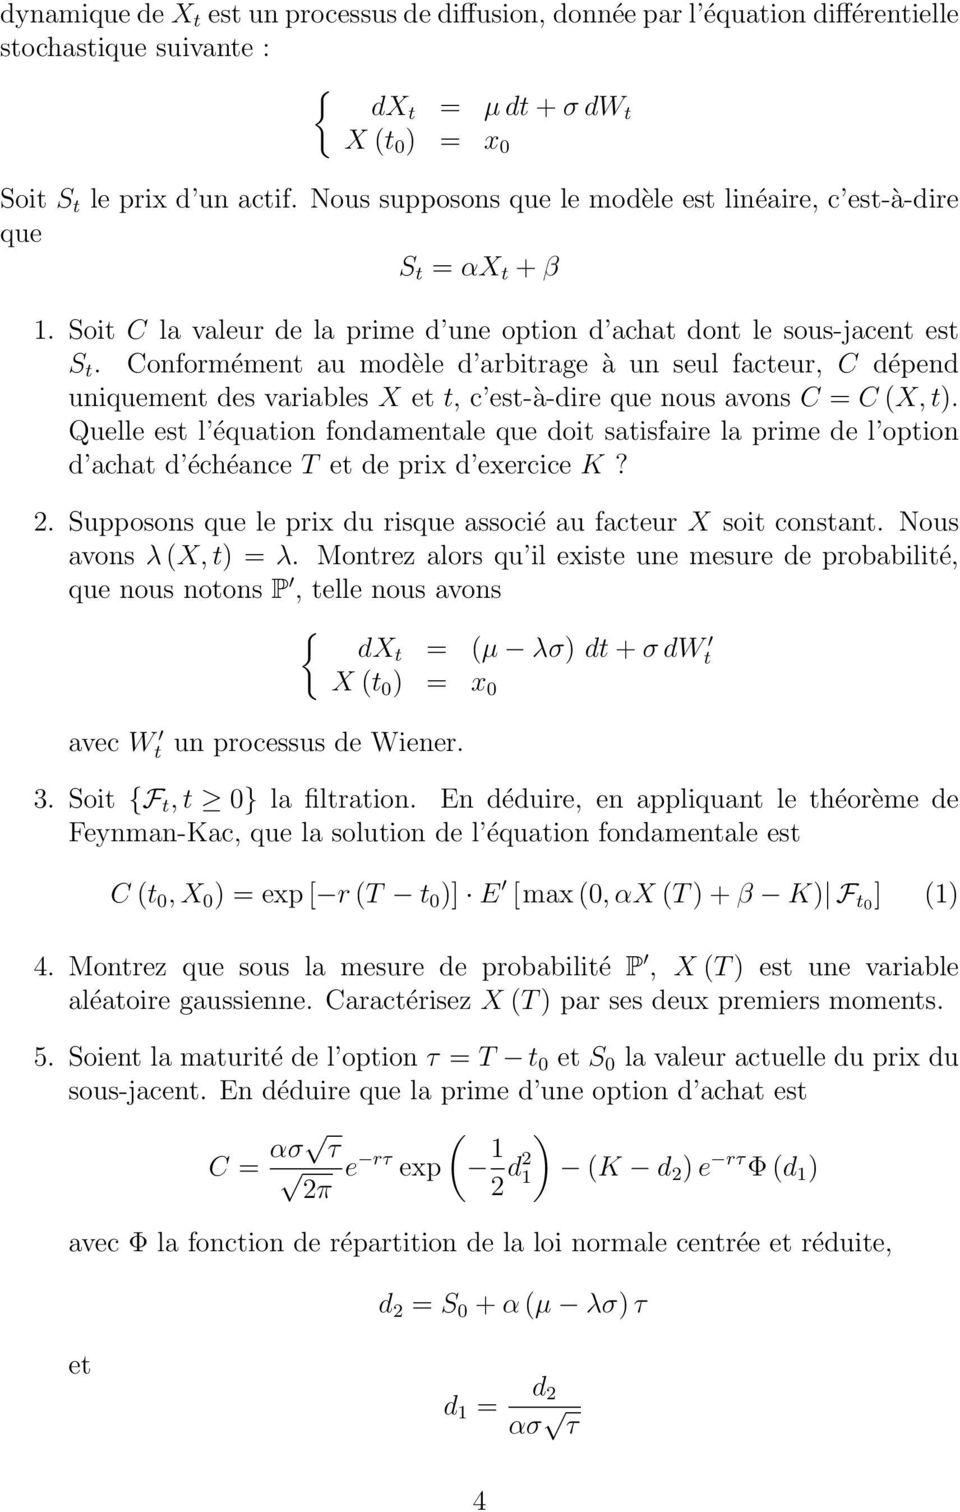 Conformémen au modèle d arbirage à un seul faceur, C dépend uniquemen des variables X e, c es-à-dire que nous avons C = C (X, ).